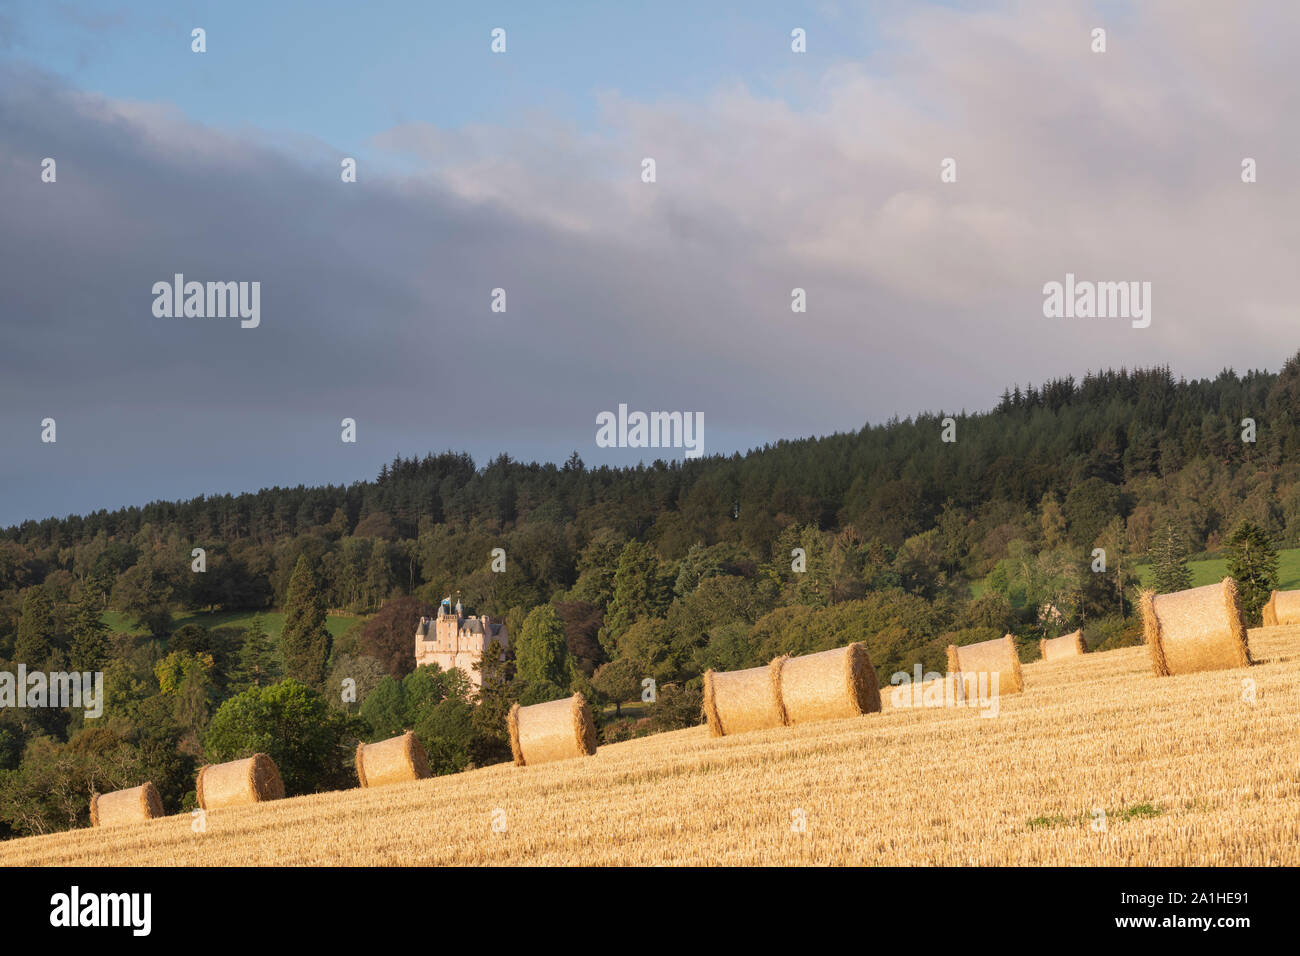 Vue de ballots de paille dans un champ de chaume, avec Craigievar Castle sur une colline boisée à l'arrière-plan Banque D'Images